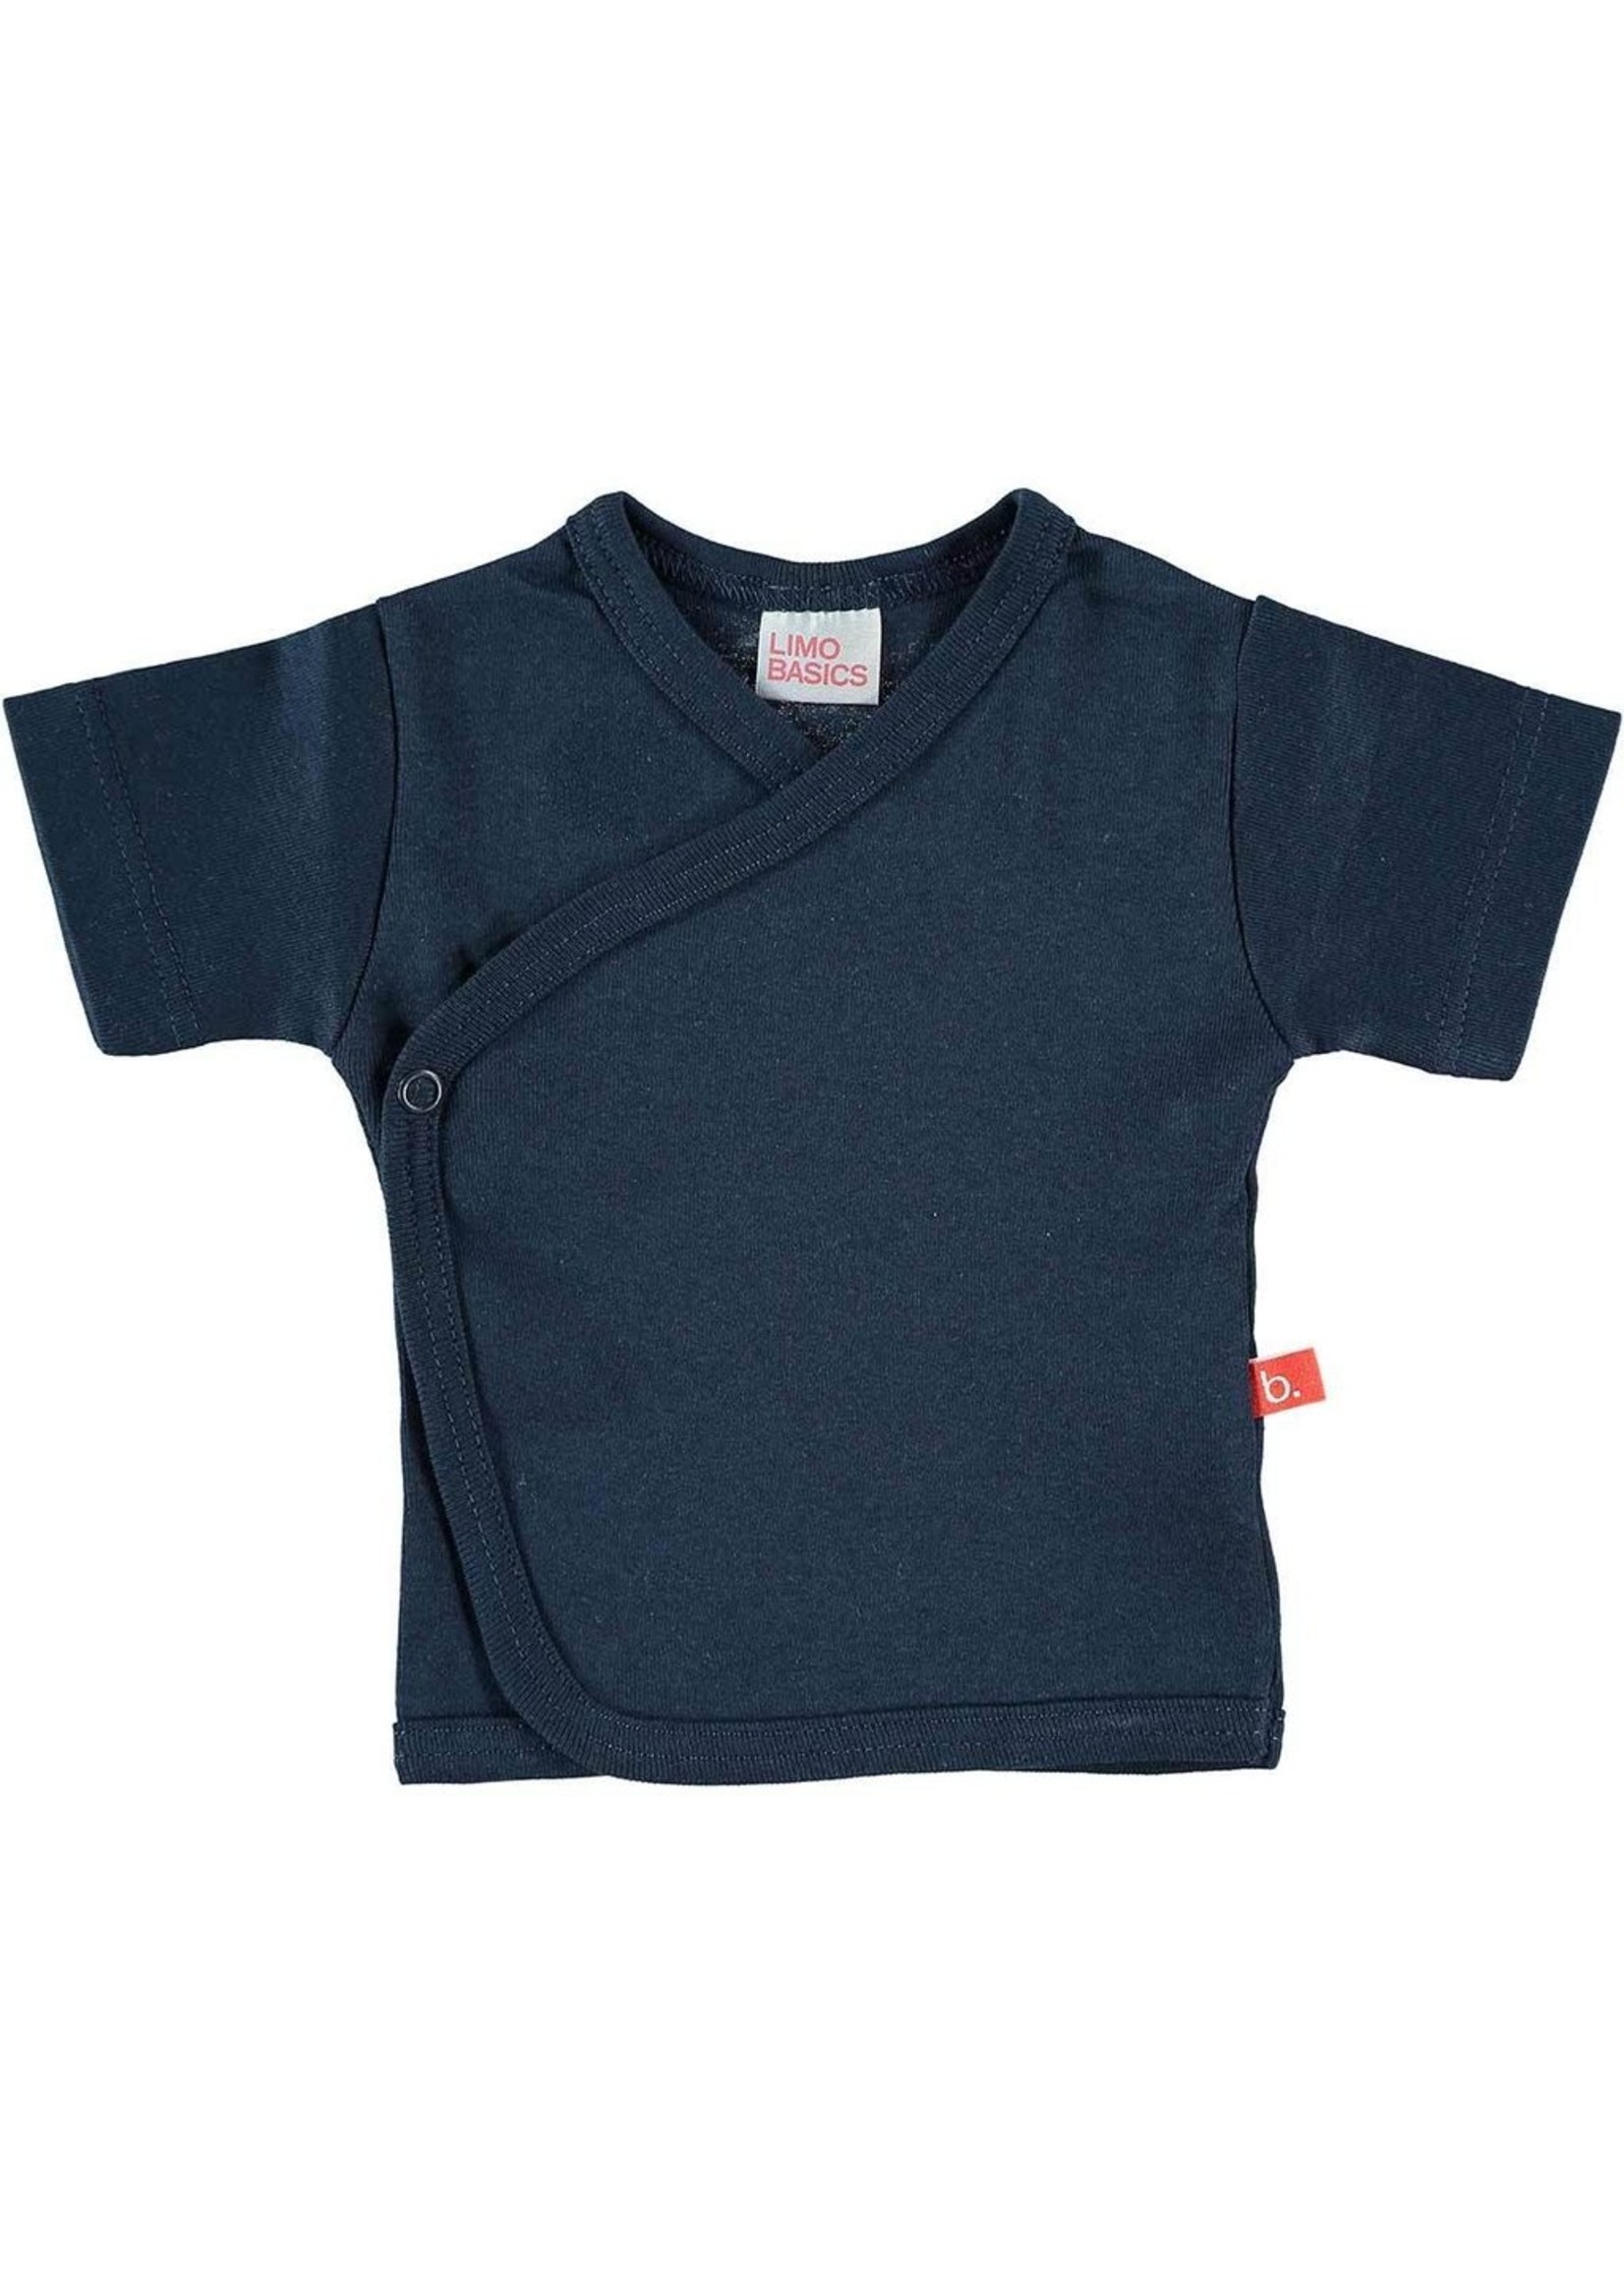 Limo basics T-shirt kimono shortsleeve navy blue 62-68